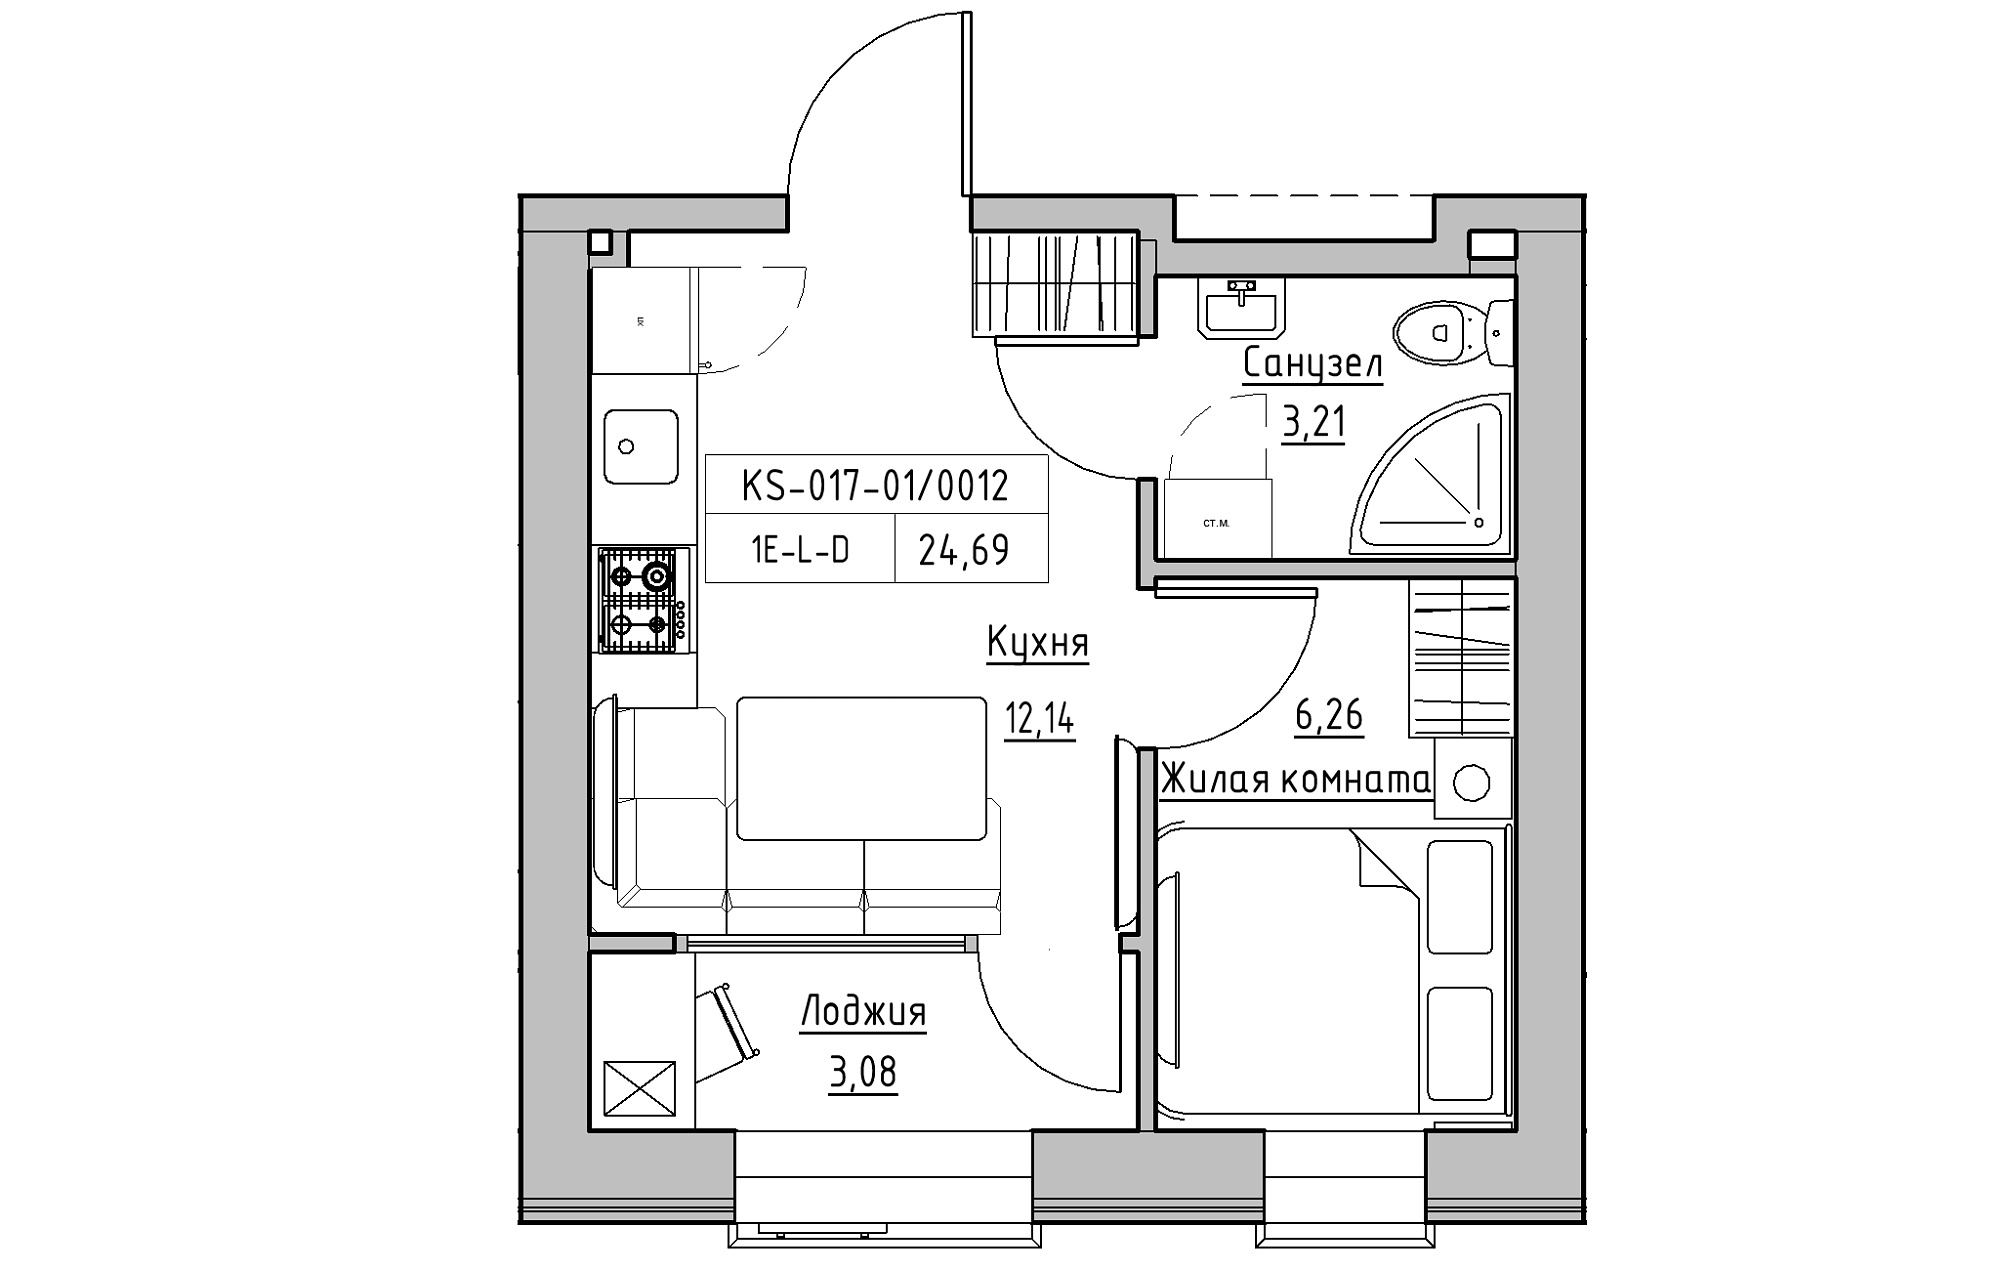 Планировка 1-к квартира площей 24.69м2, KS-017-01/0012.